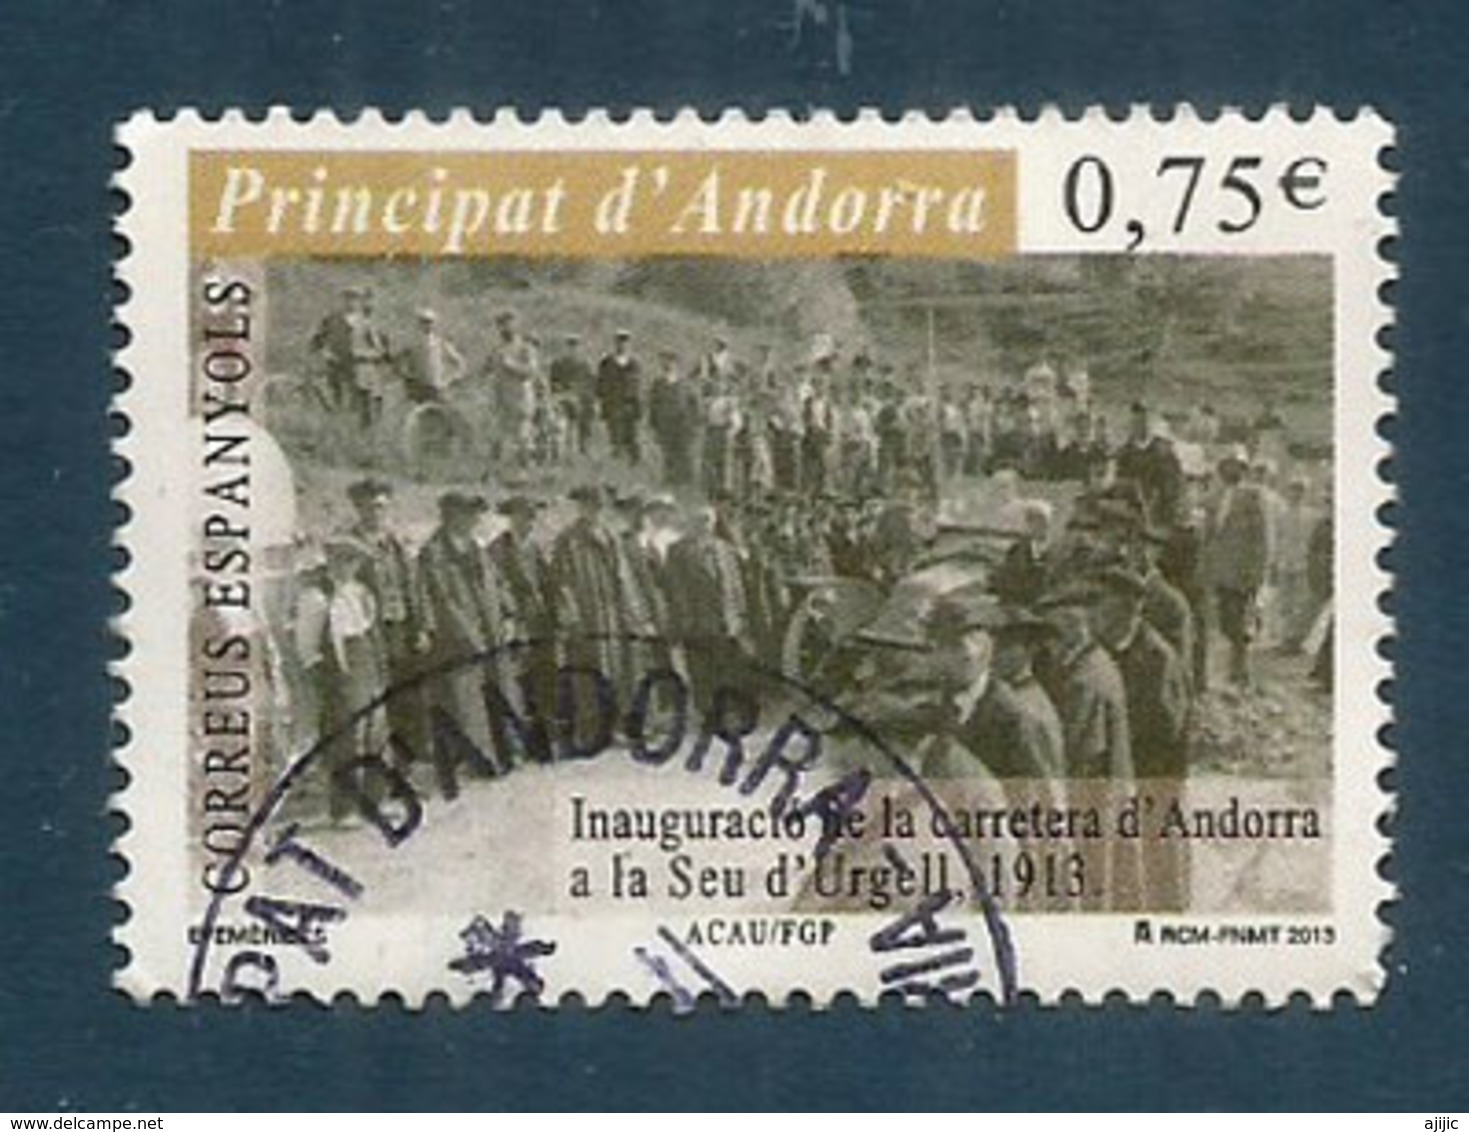 Première Route D'accès D'Andorre En 1913, Vers L'Espagne, Un Timbre Oblitéré, 1 ère Qualité, Année 2013.AND.ESP - Oblitérés